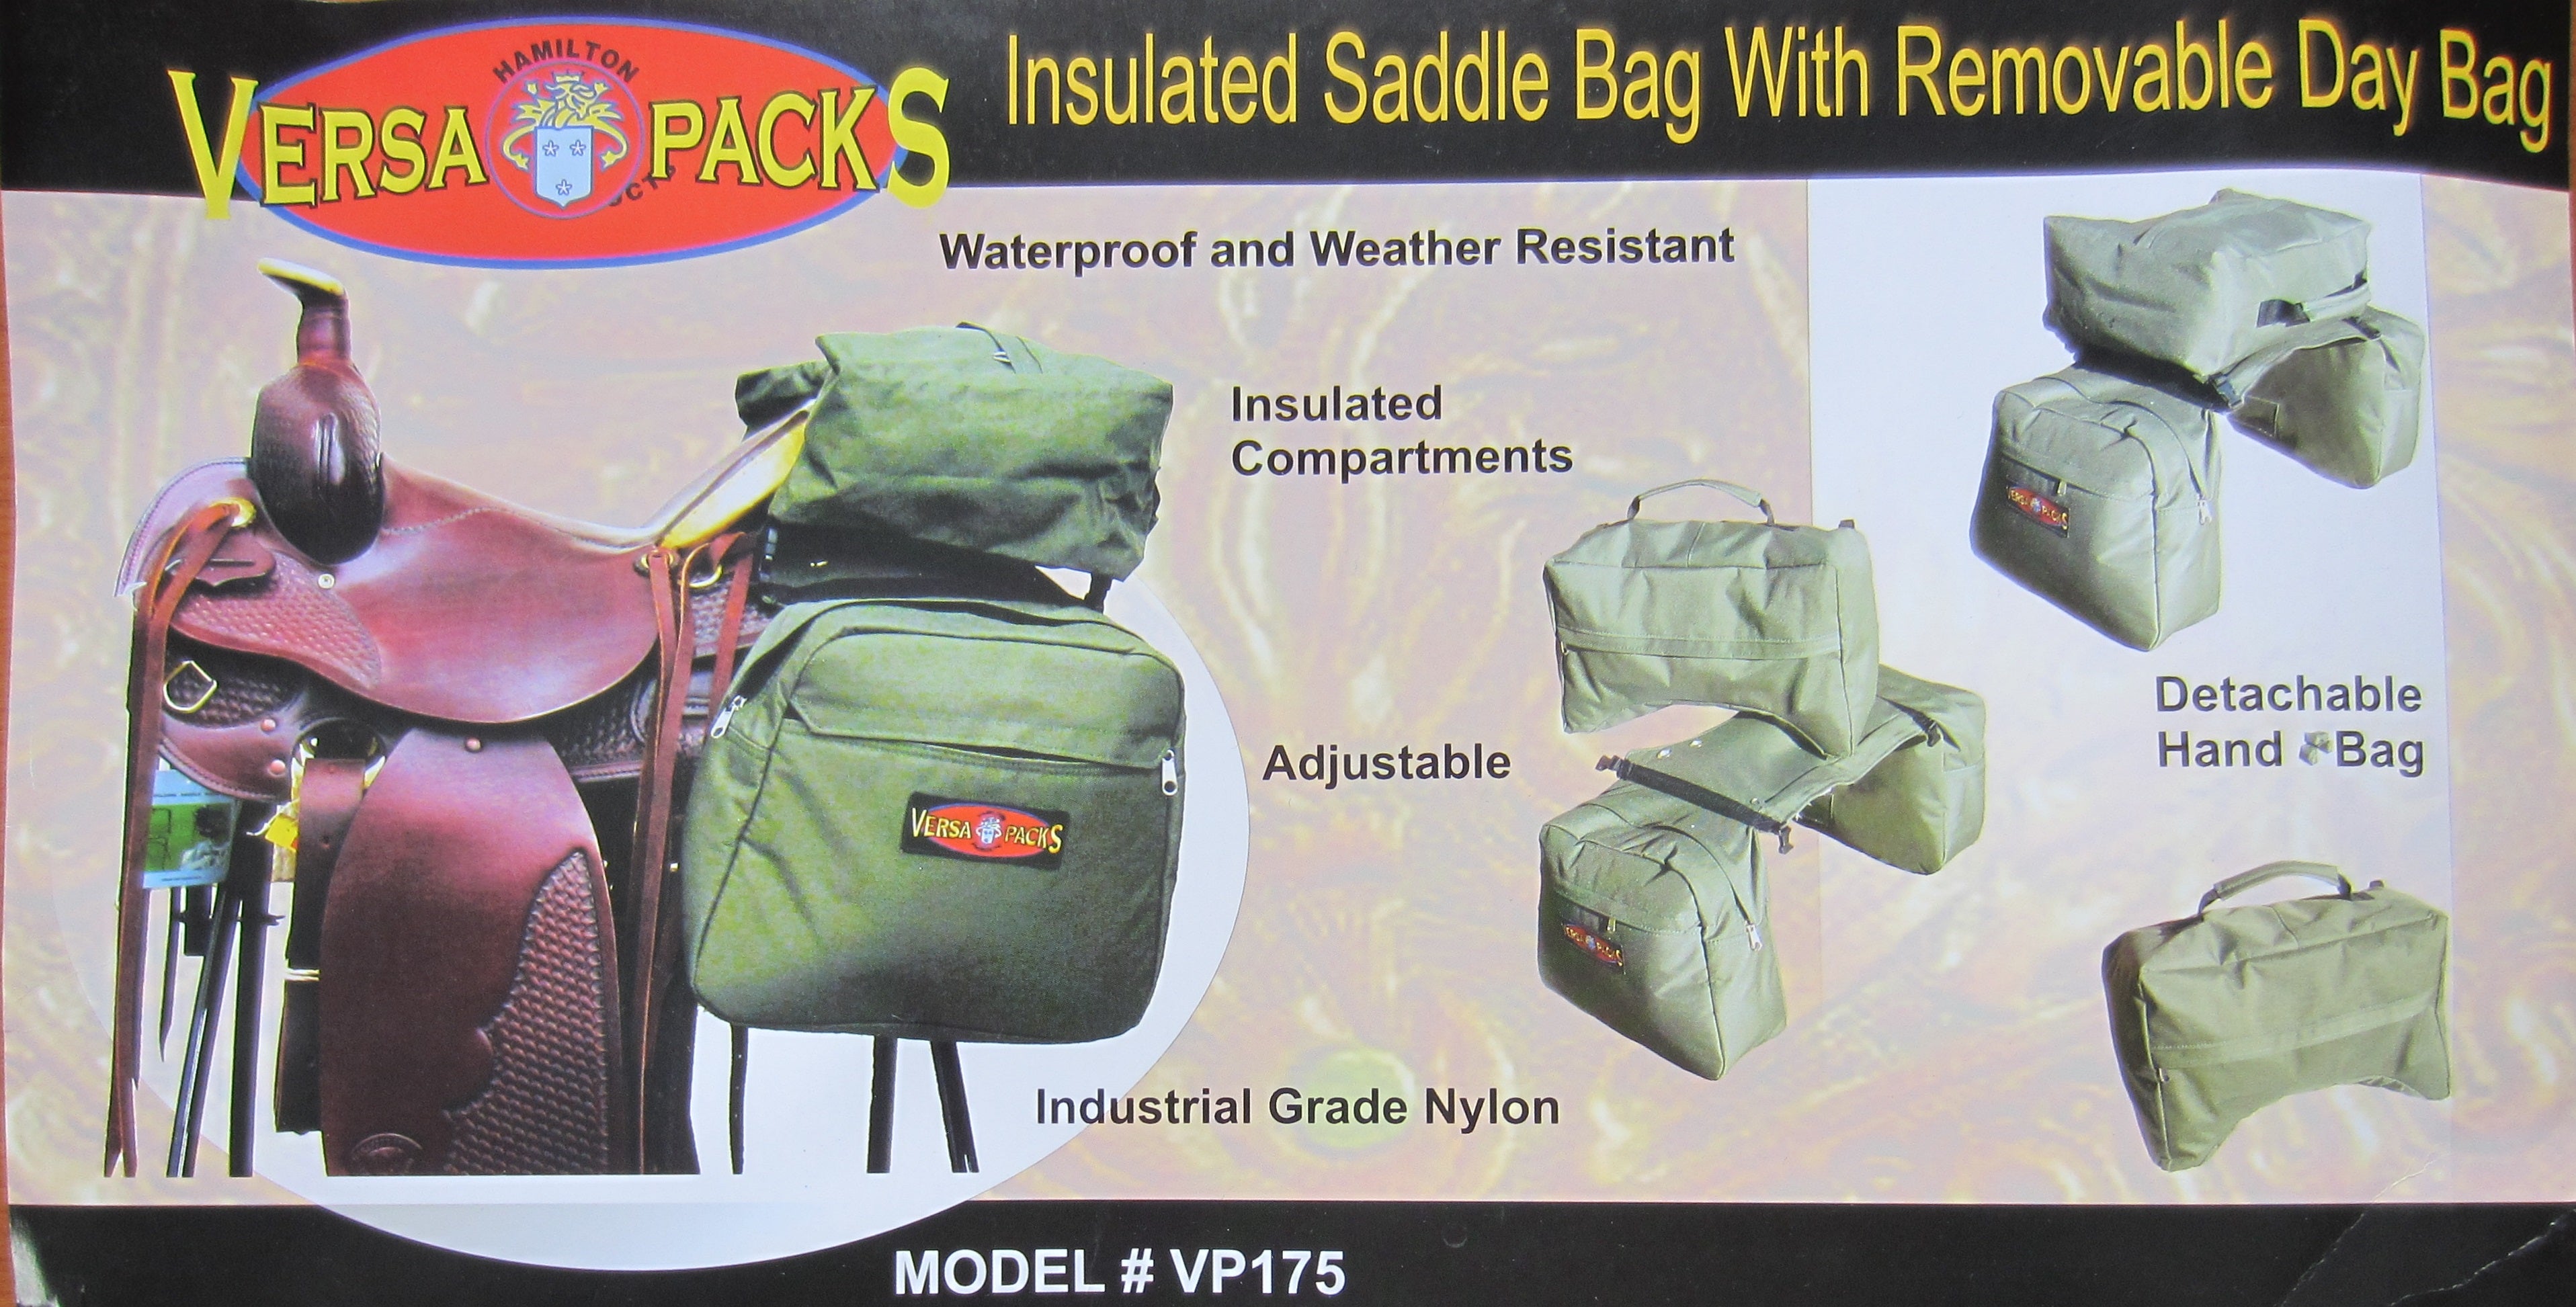 Insulated saddle bag